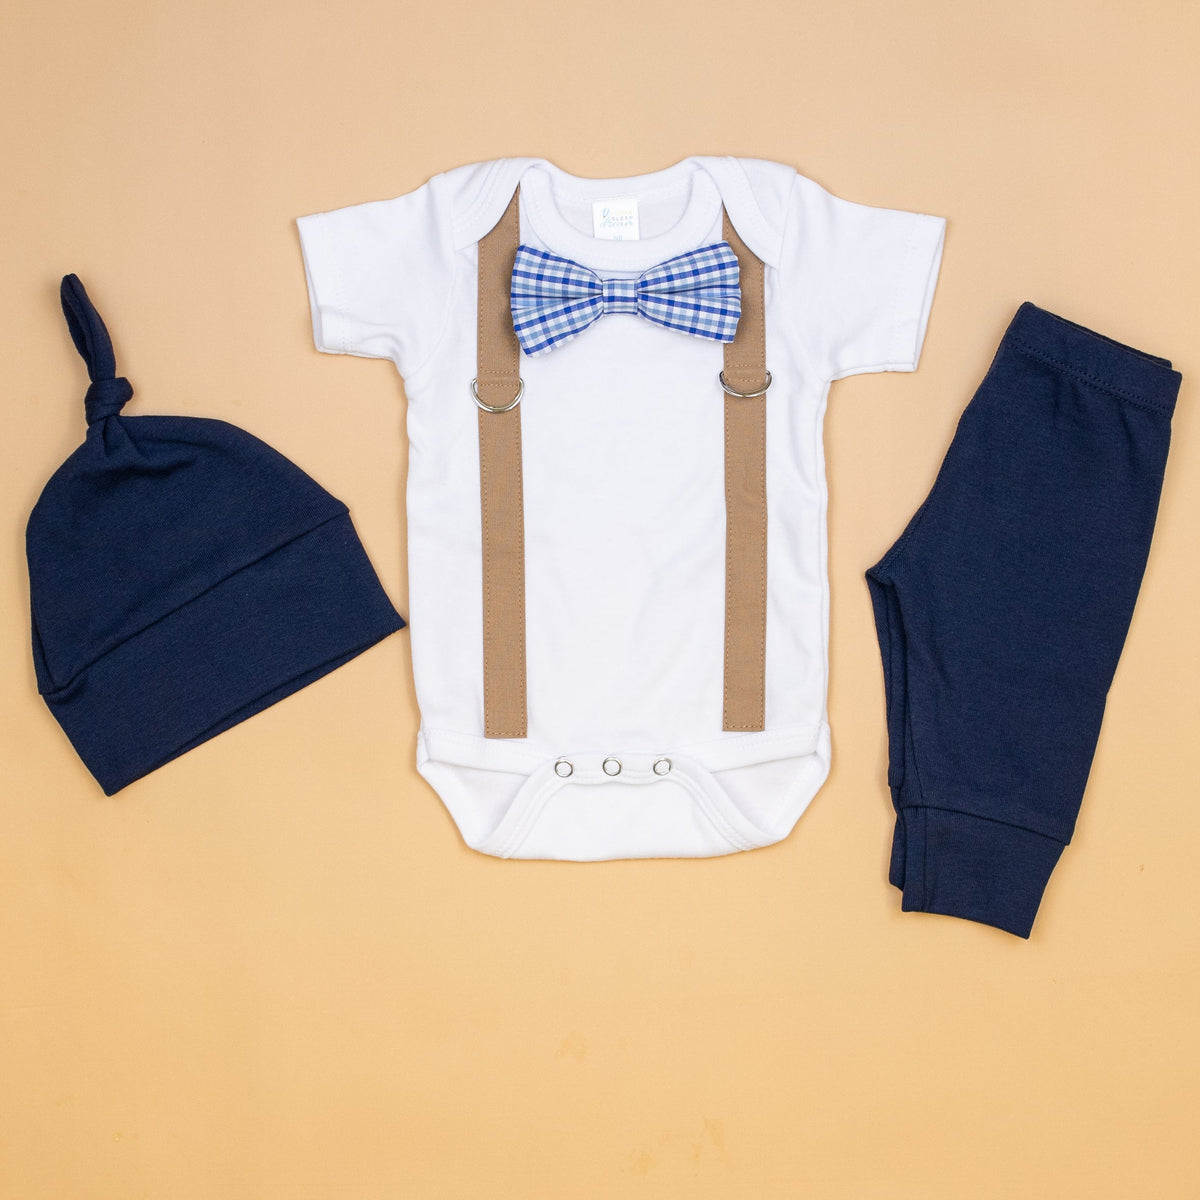 Baby Boy Shower Gift Ideas: Shop Small! - Cuddle Sleep Dream